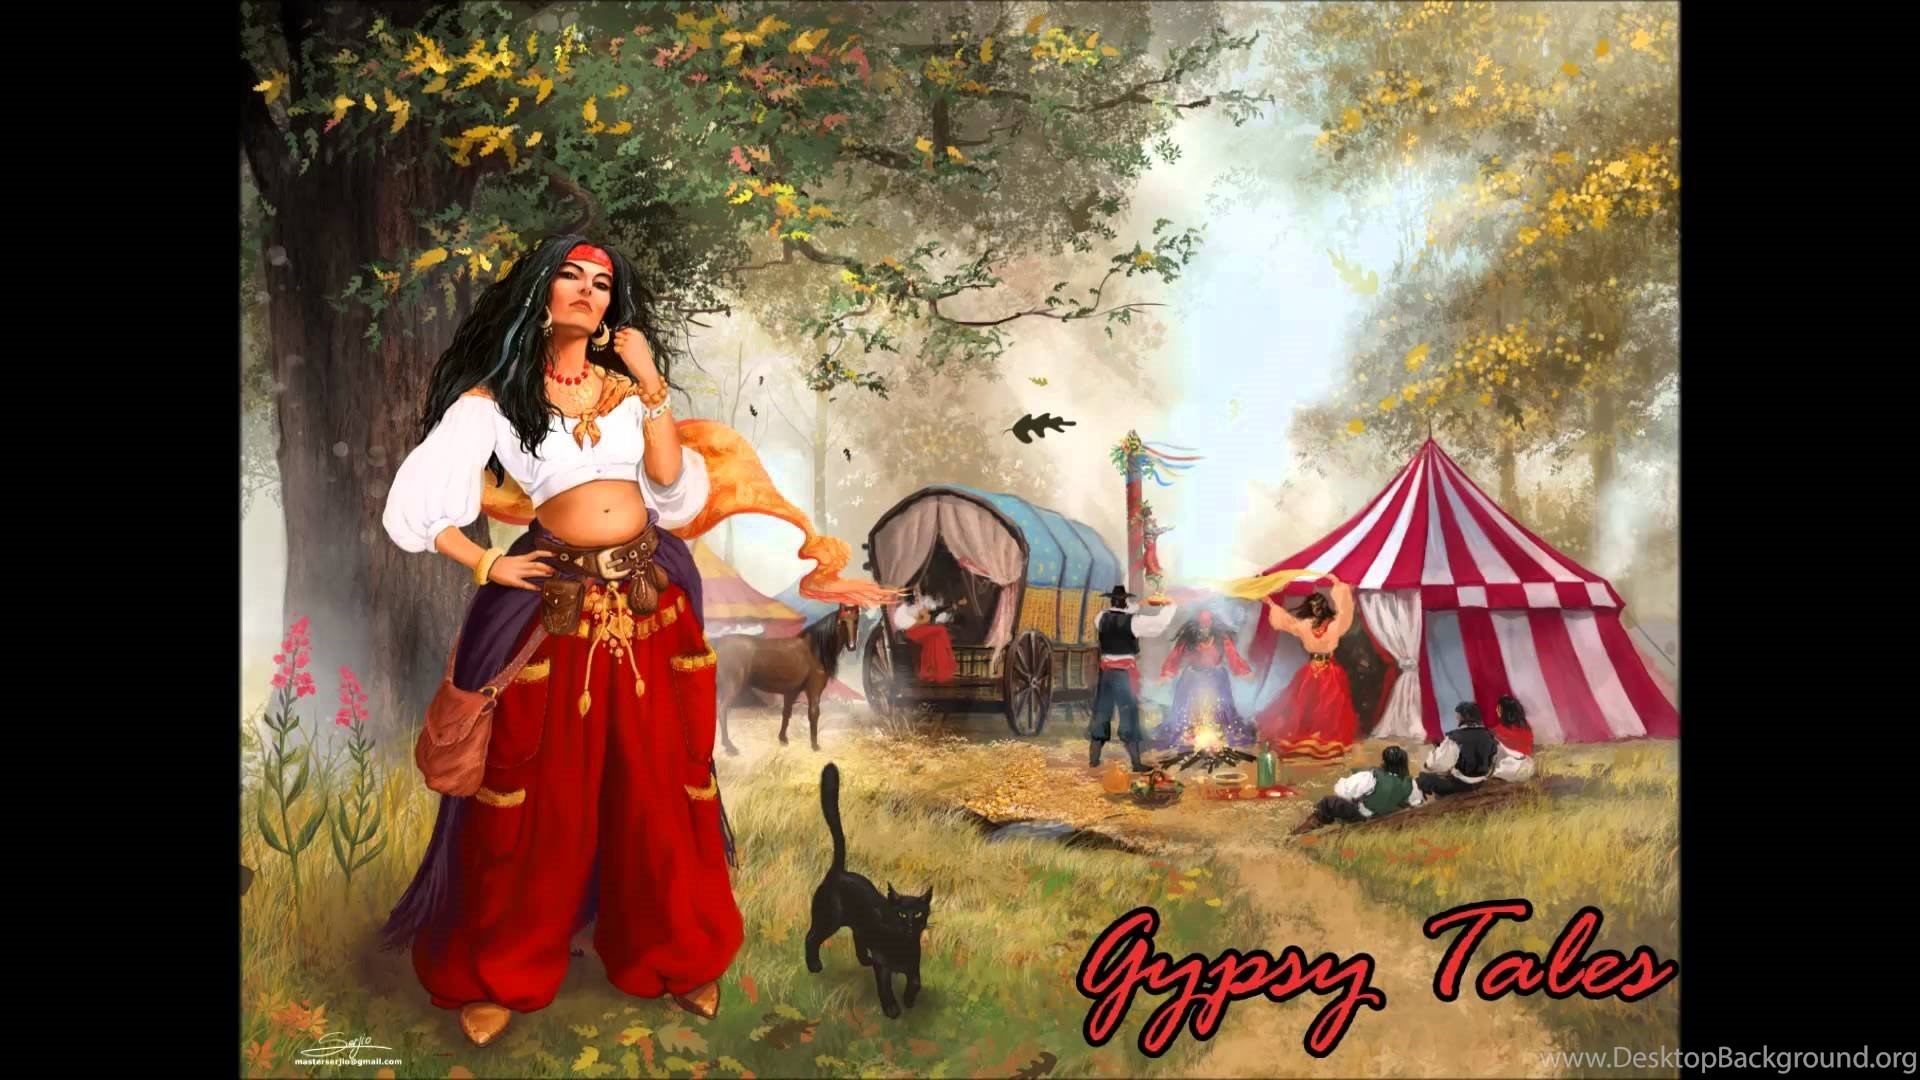 1920x1080 Fantasy Gypsy Music ~ Gypsy Tales YouTube